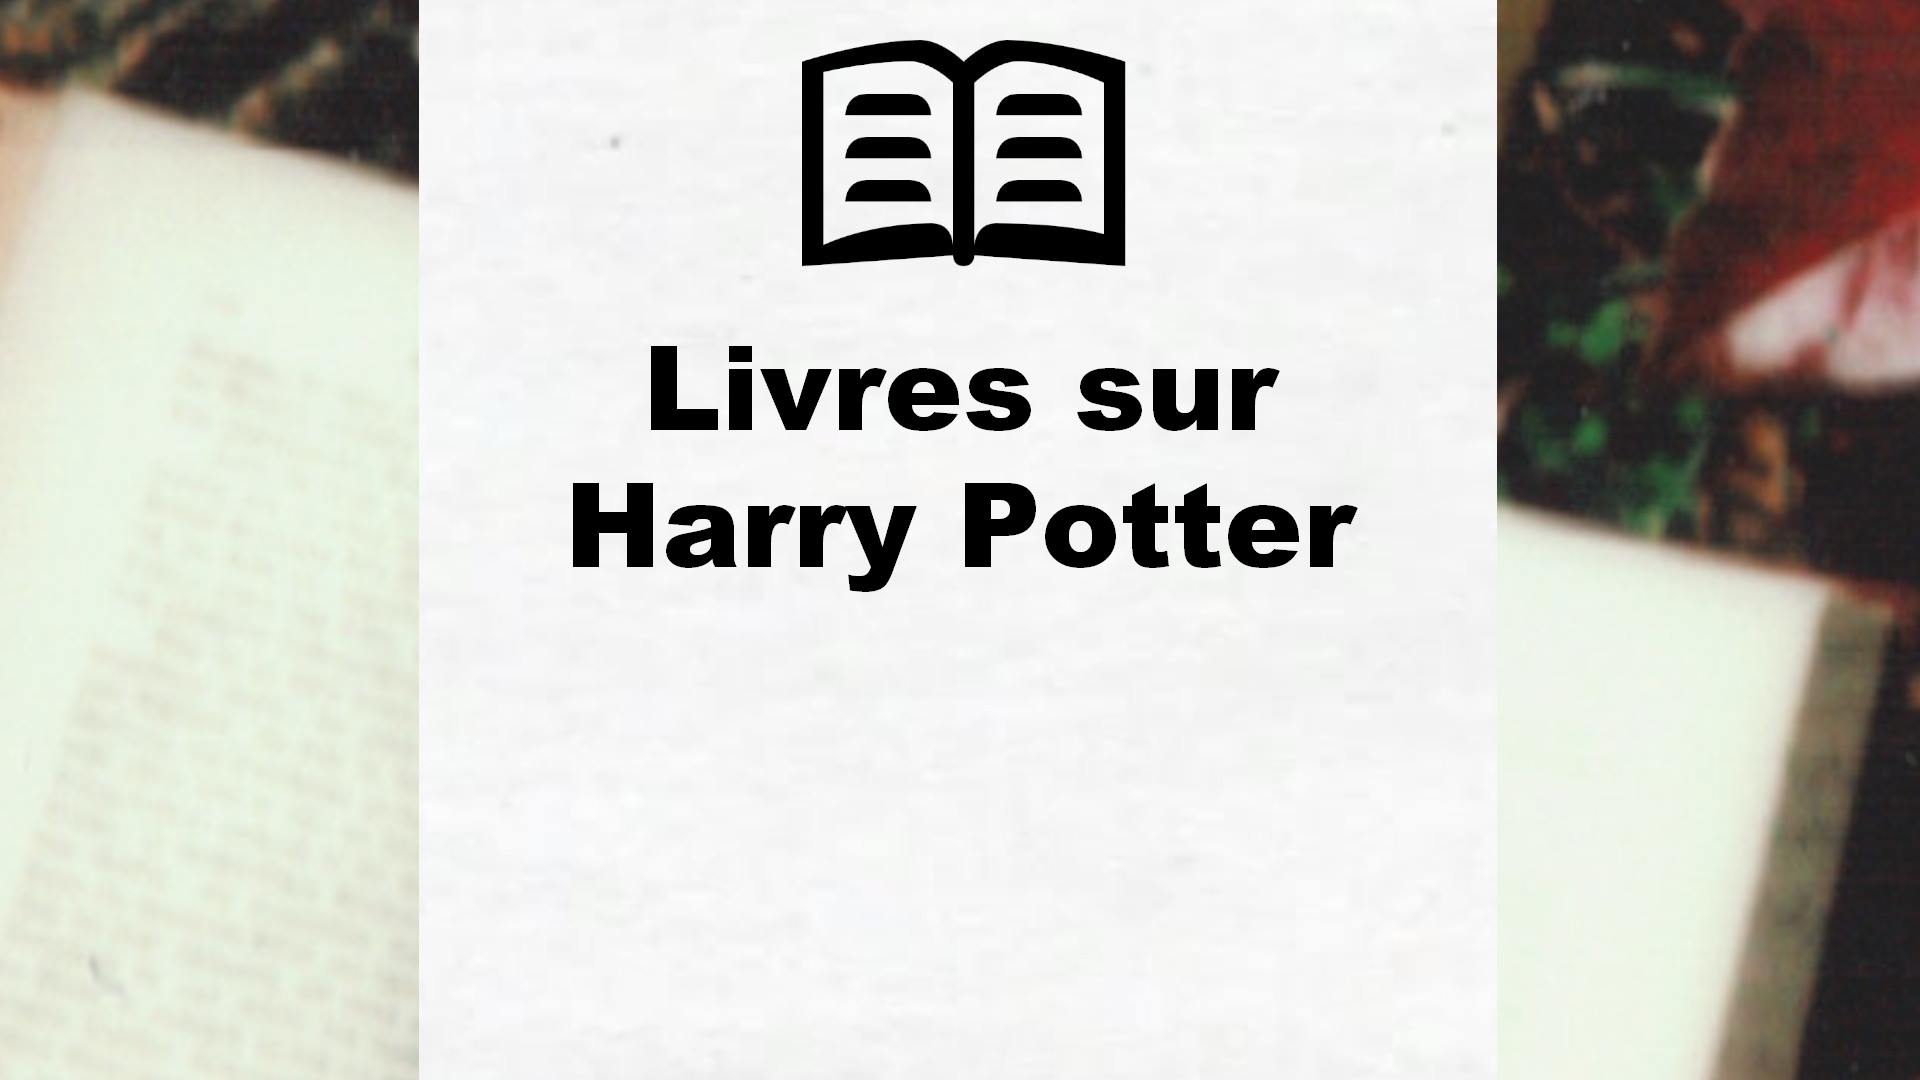 Livres sur Harry Potter